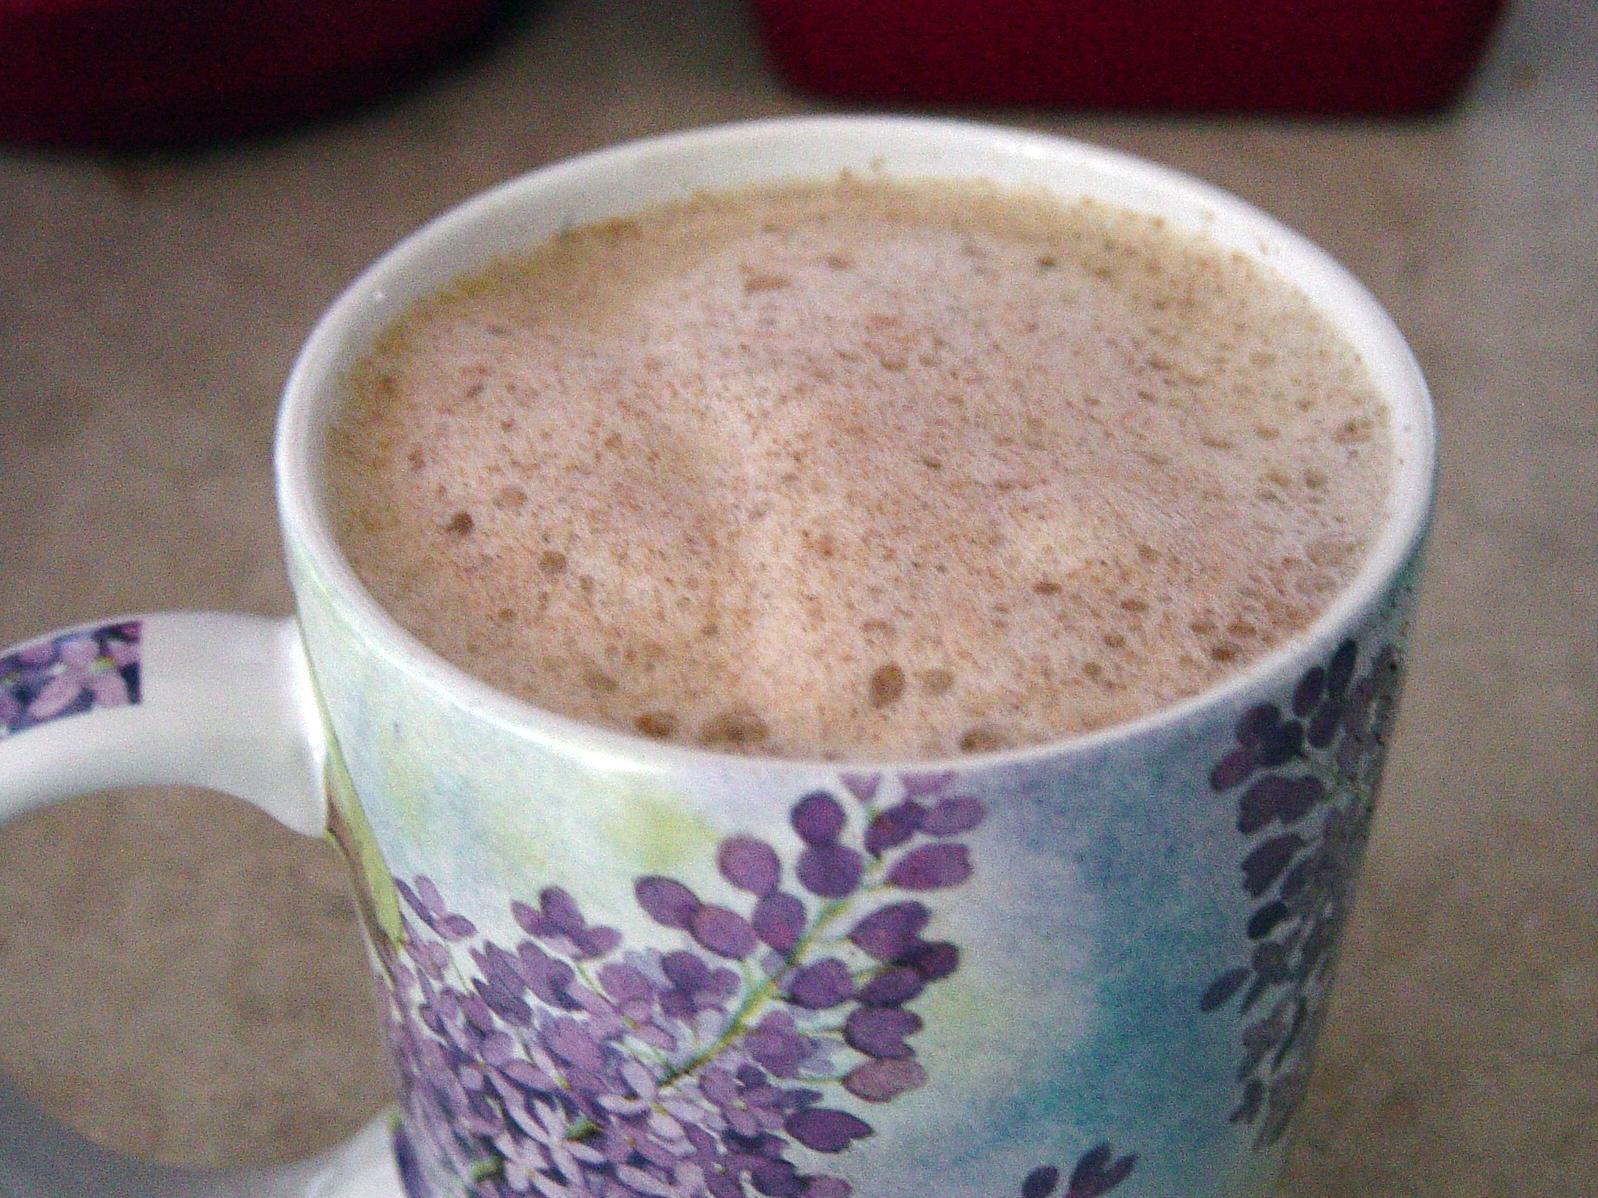  A latte so fancy, it'll make you feel like royalty.